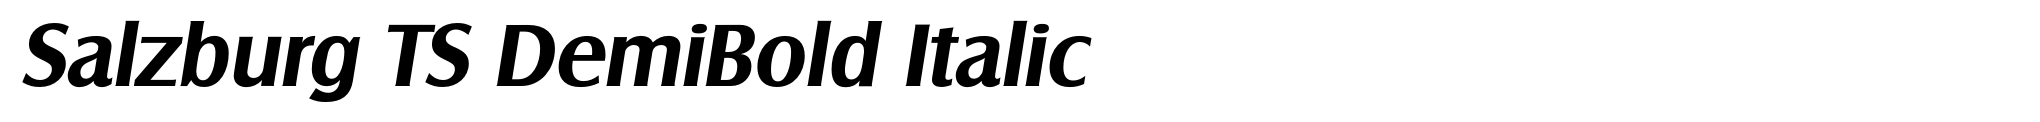 Salzburg TS DemiBold Italic image